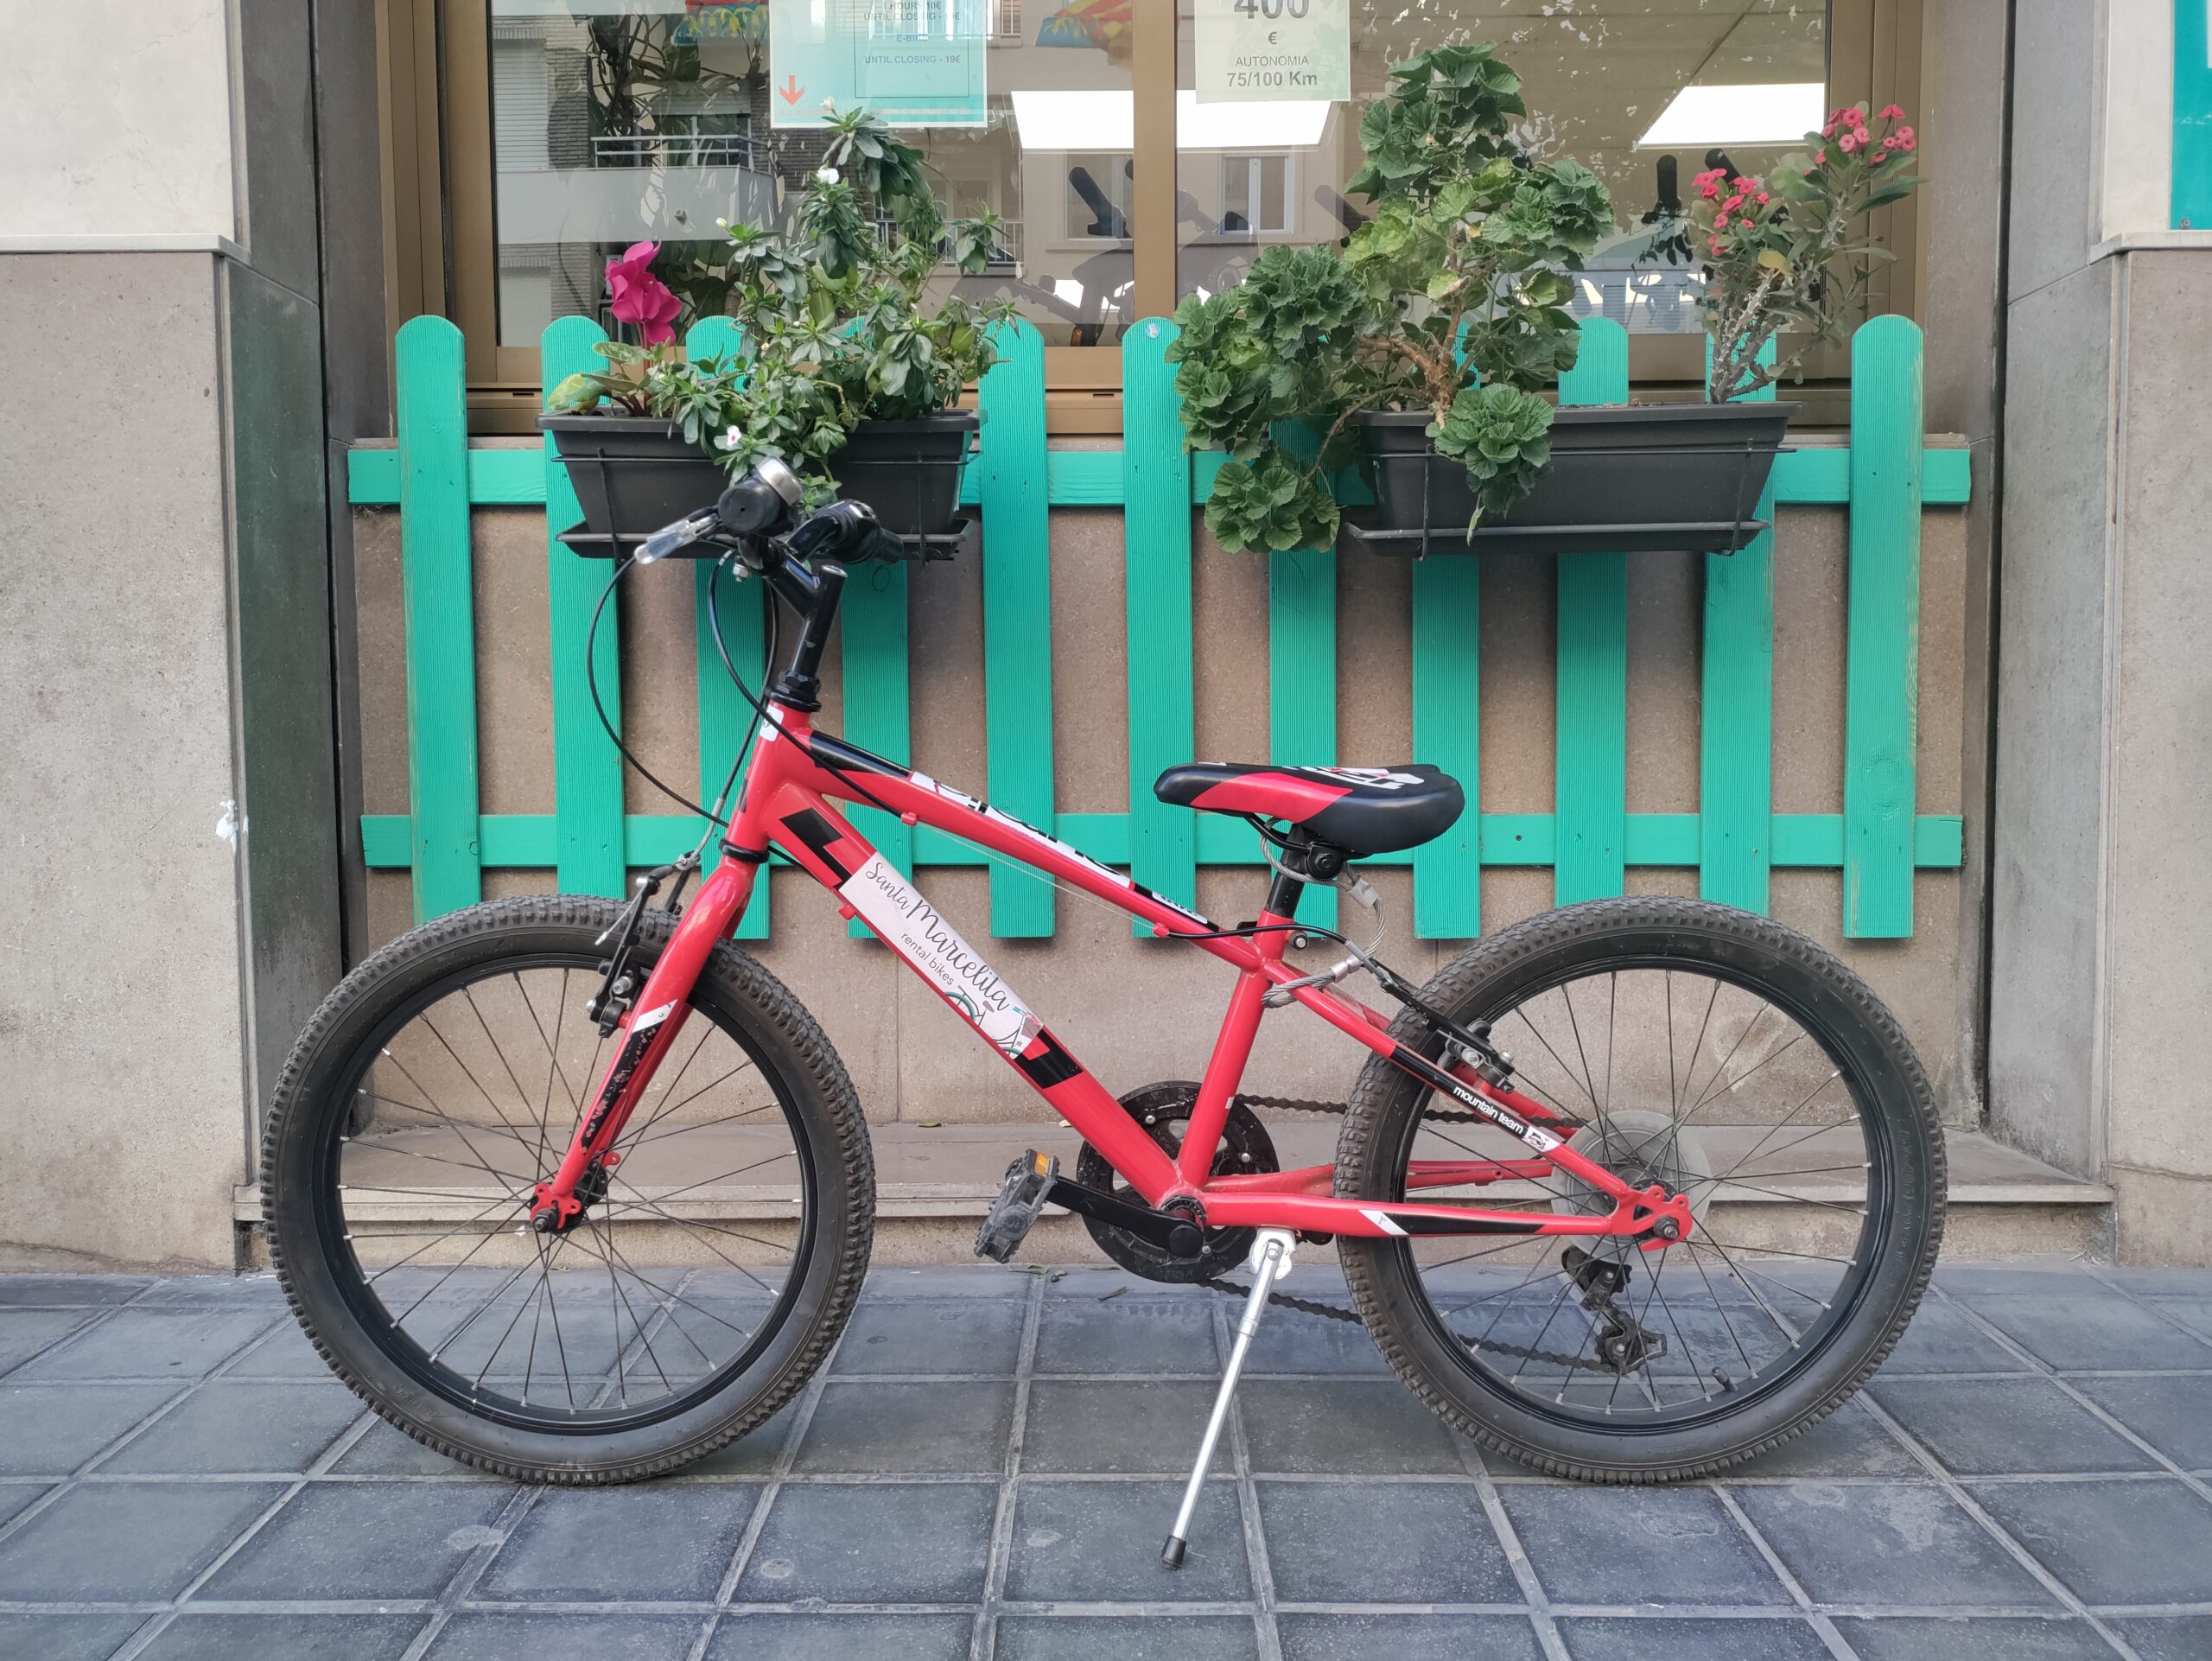 alquiler de bicicletas en valencia - bici de chica adolescente